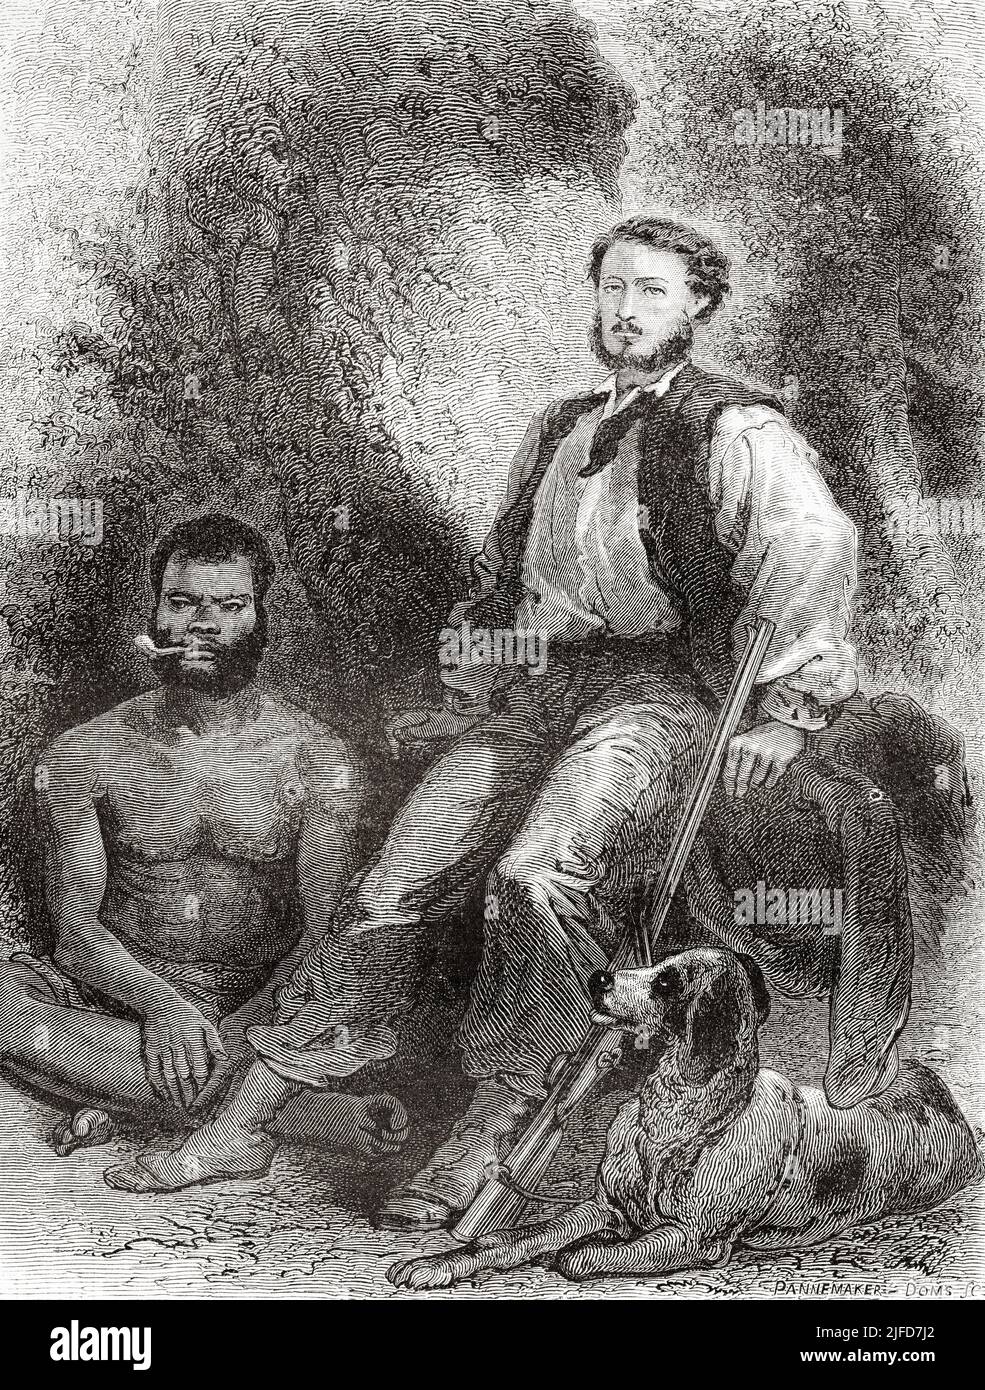 Retrato de Jules Garnier, su guía local y su perro Suluc, Nueva Caledonia. Viaje a Nueva Caledonia en Jules Garnier 1863-1866 desde Le Tour du Monde 1867 Foto de stock